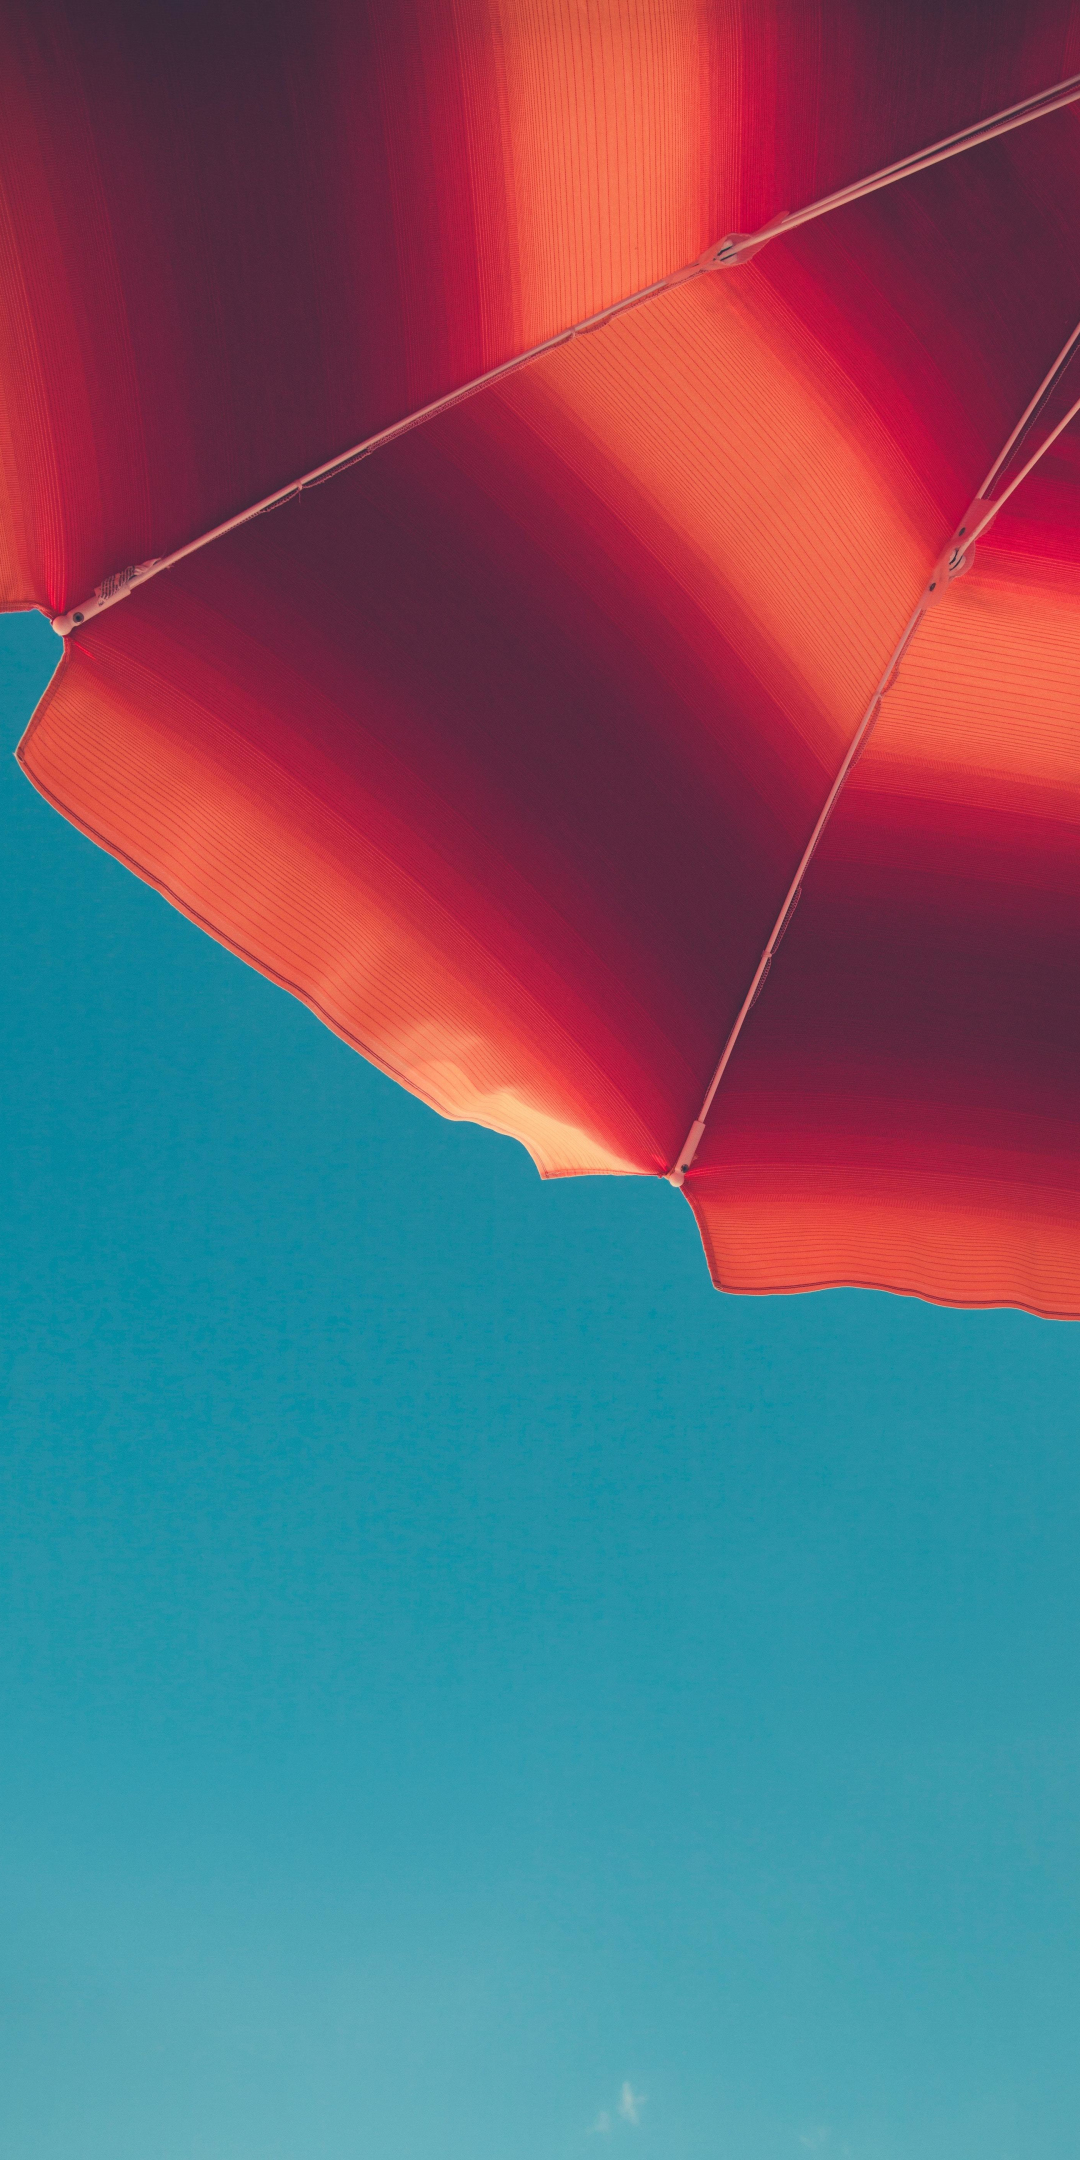 Umbrella, summer, 1080x2160 wallpaper